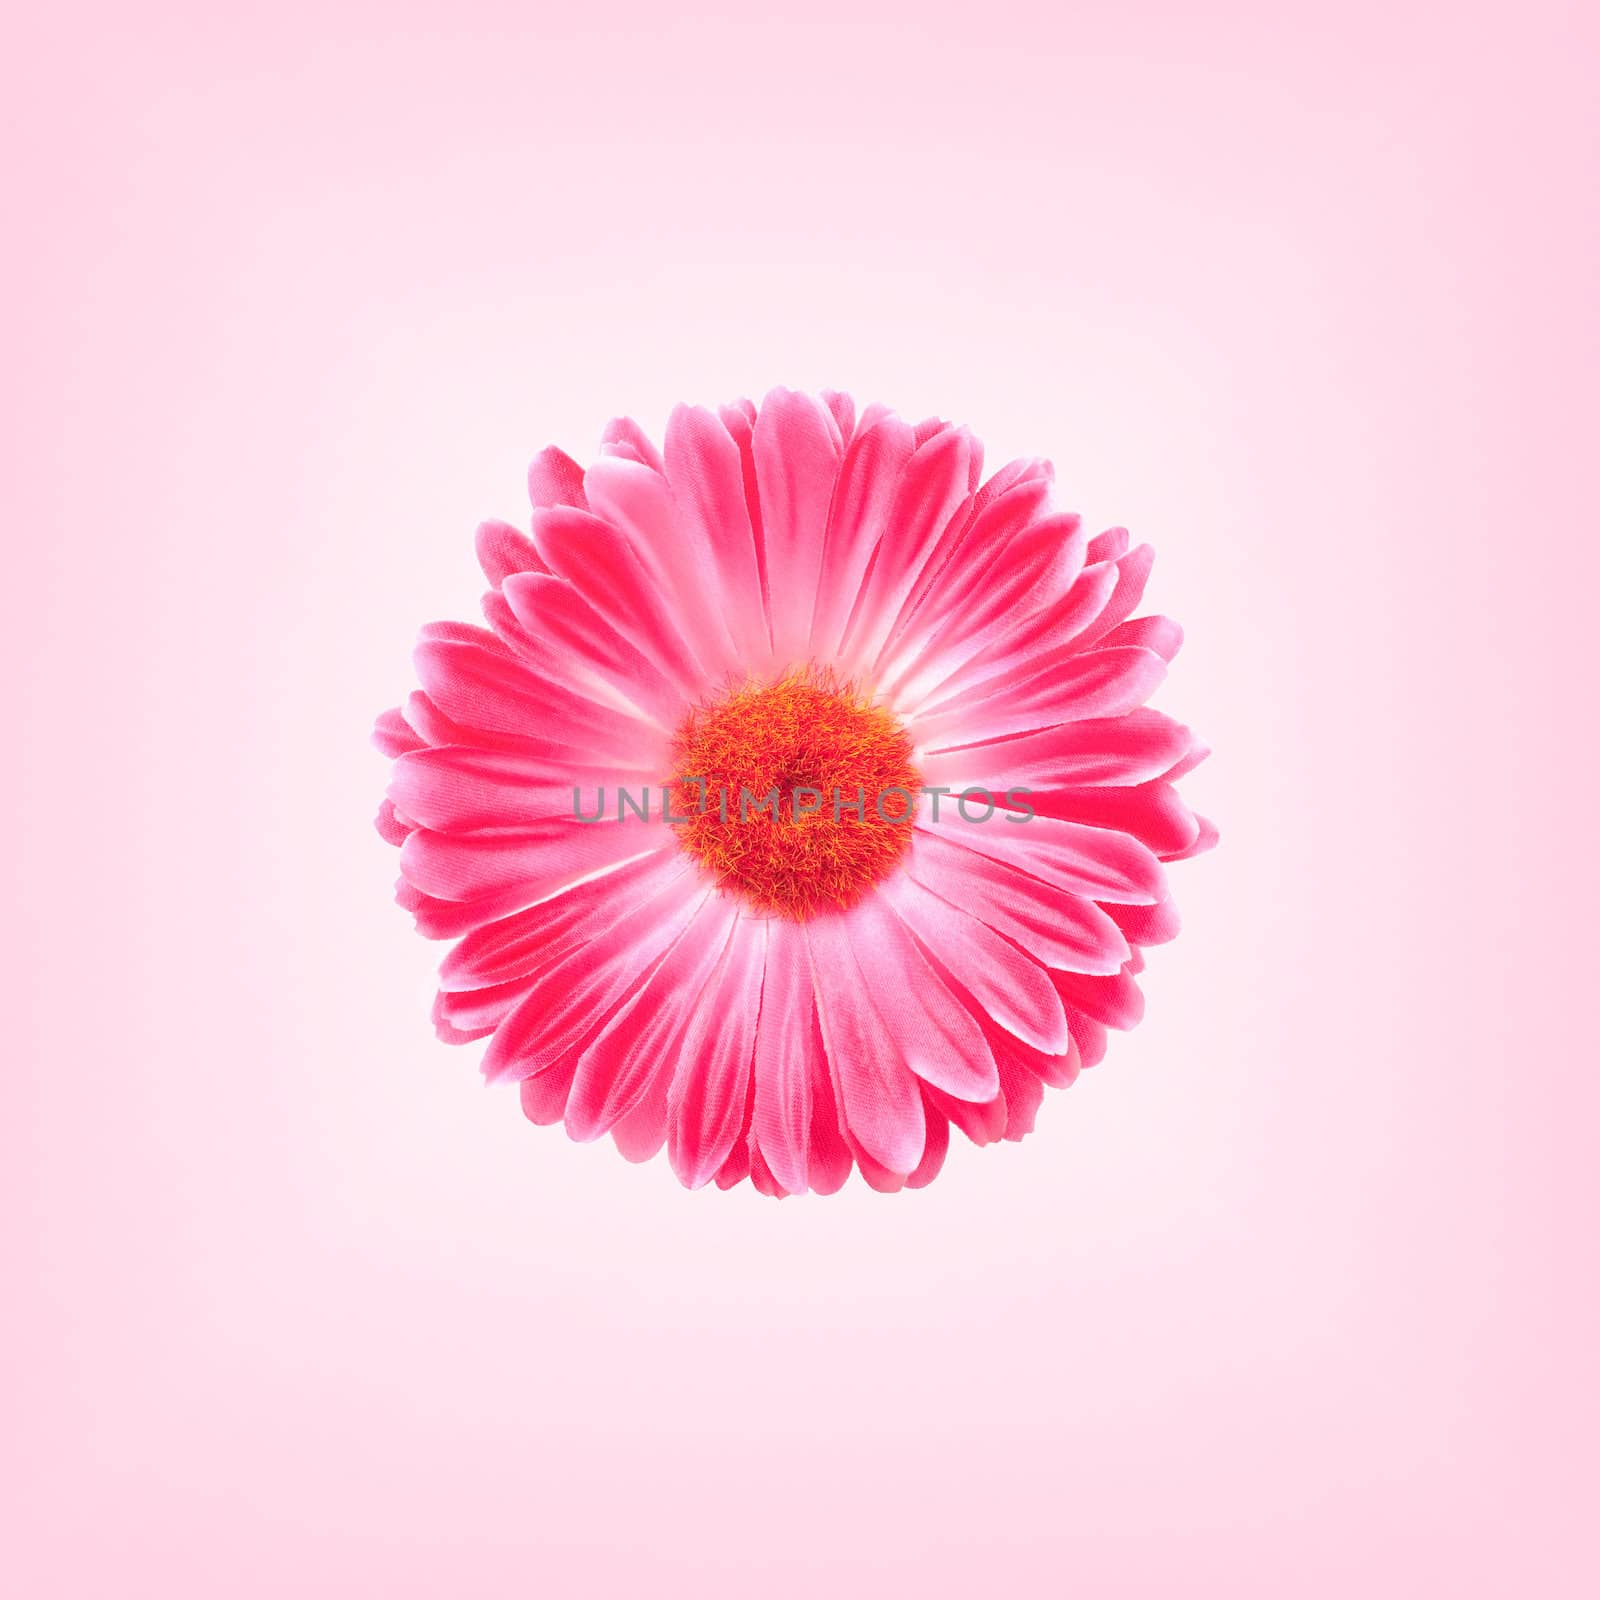  Pink Gerbera Flower by Rainman